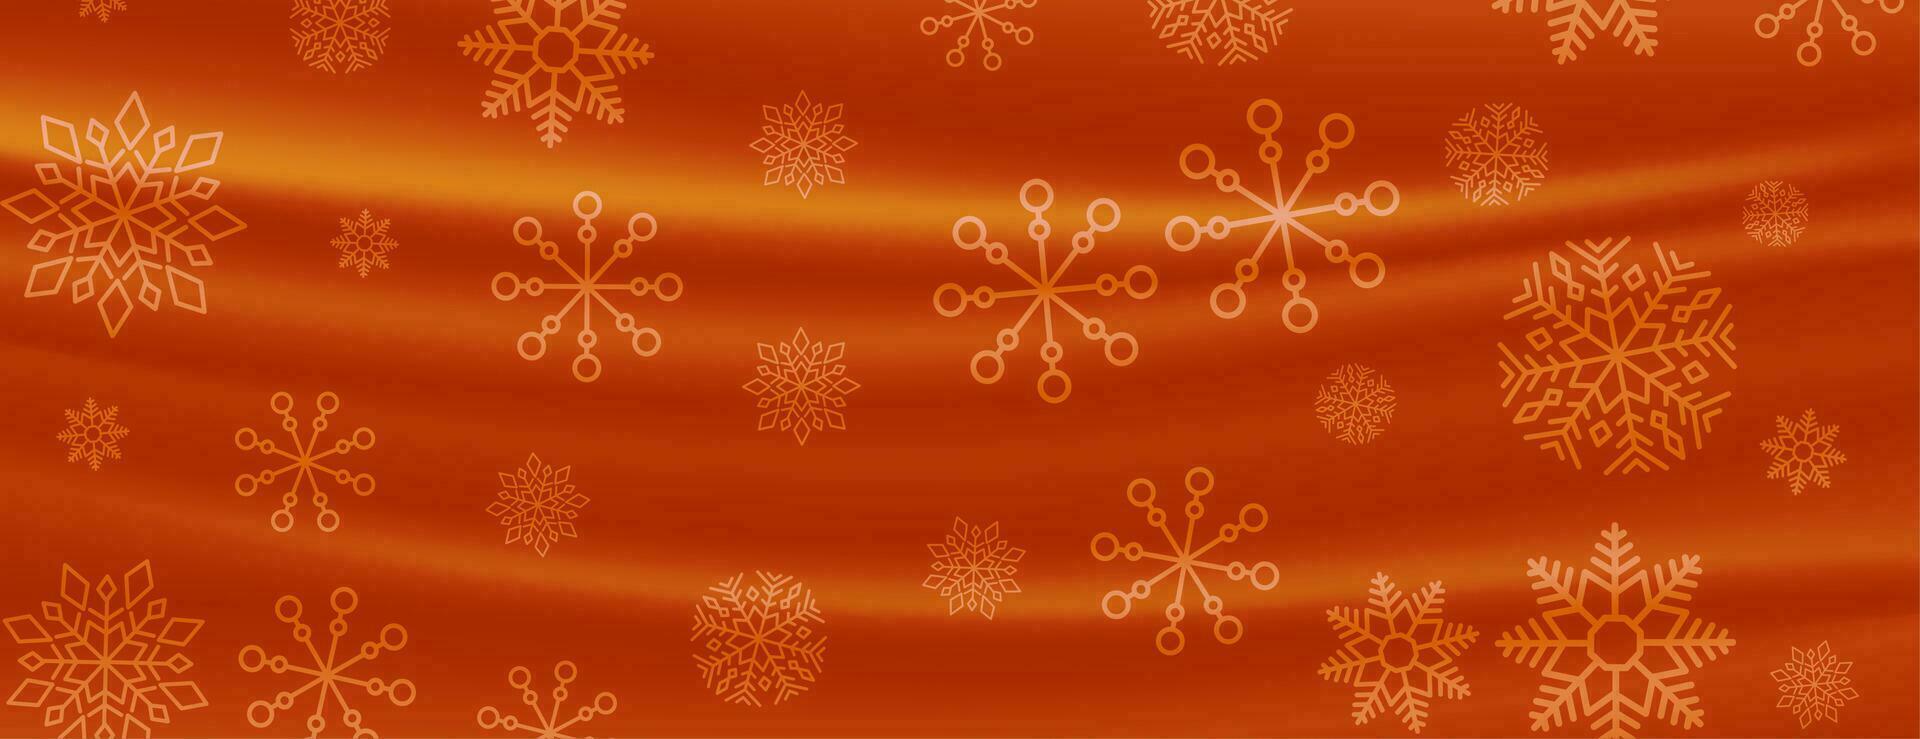 cortina estilo alegre Navidad copos de nieve bandera vector